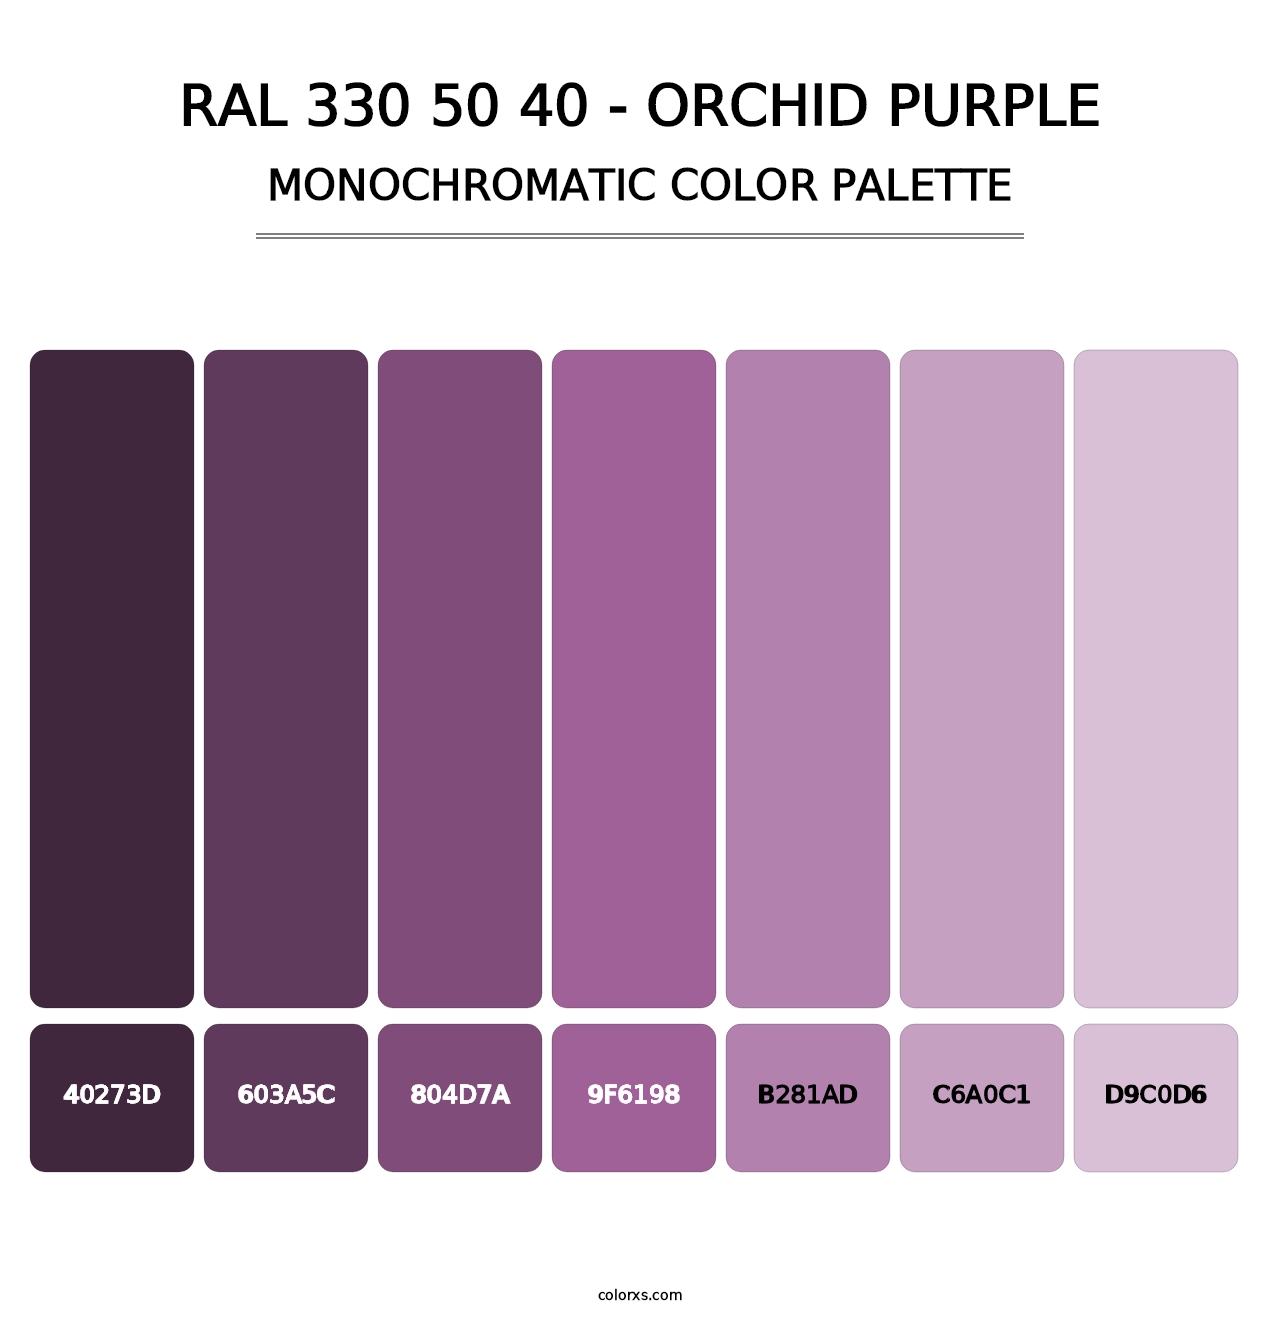 RAL 330 50 40 - Orchid Purple - Monochromatic Color Palette